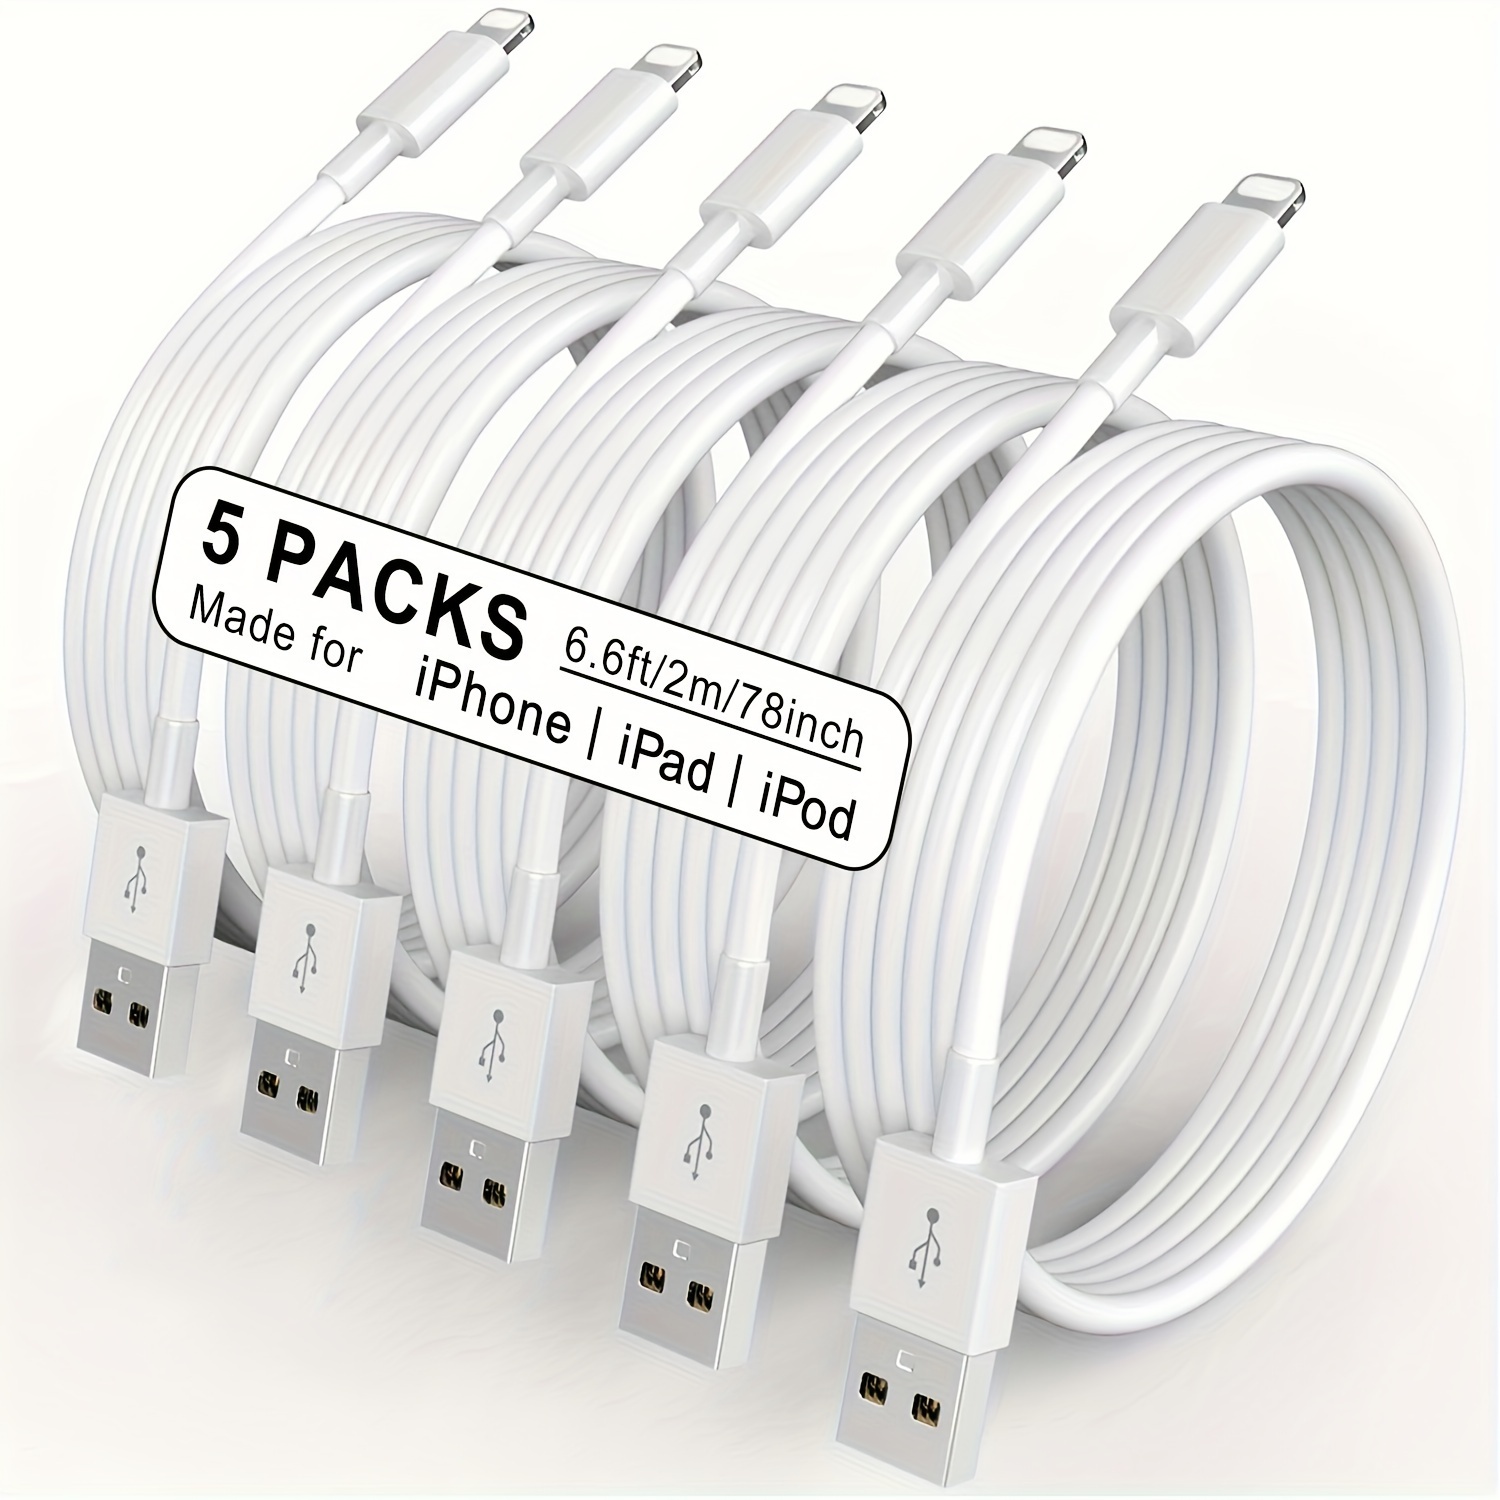 Cable Lightning corto de 1 pie para iPhone, paquete de 3 cables de carga  para iPhone con certificación MFi de 1 pie para iPhone 12 11 Pro X XS Max